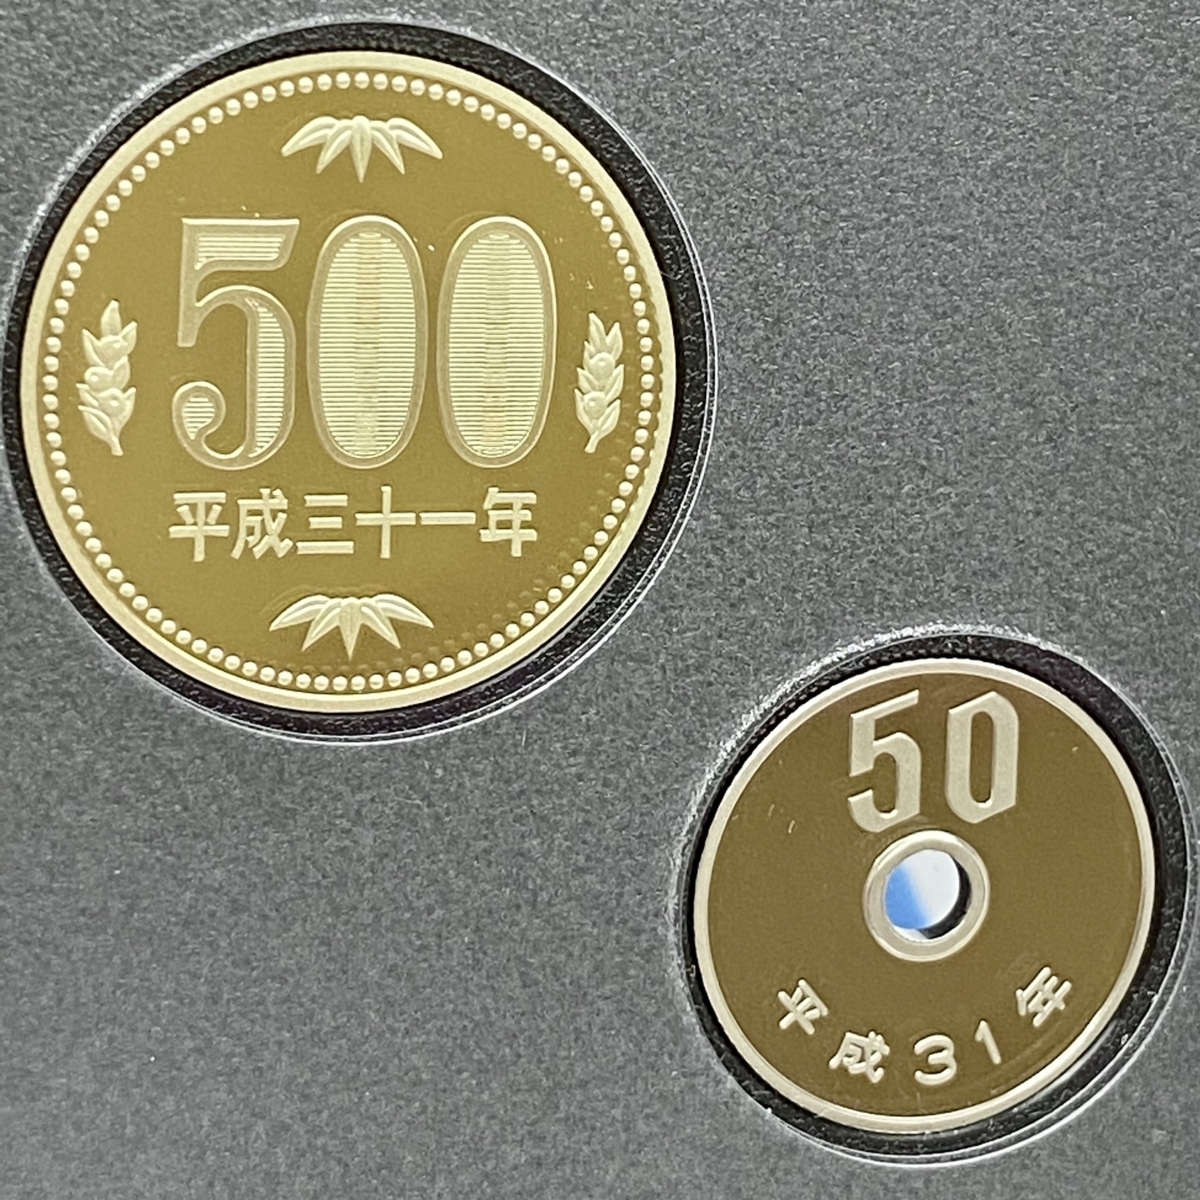 プルーフ貨幣セット 2019 額面666円 年銘板 記念硬貨 限定貨幣 coin